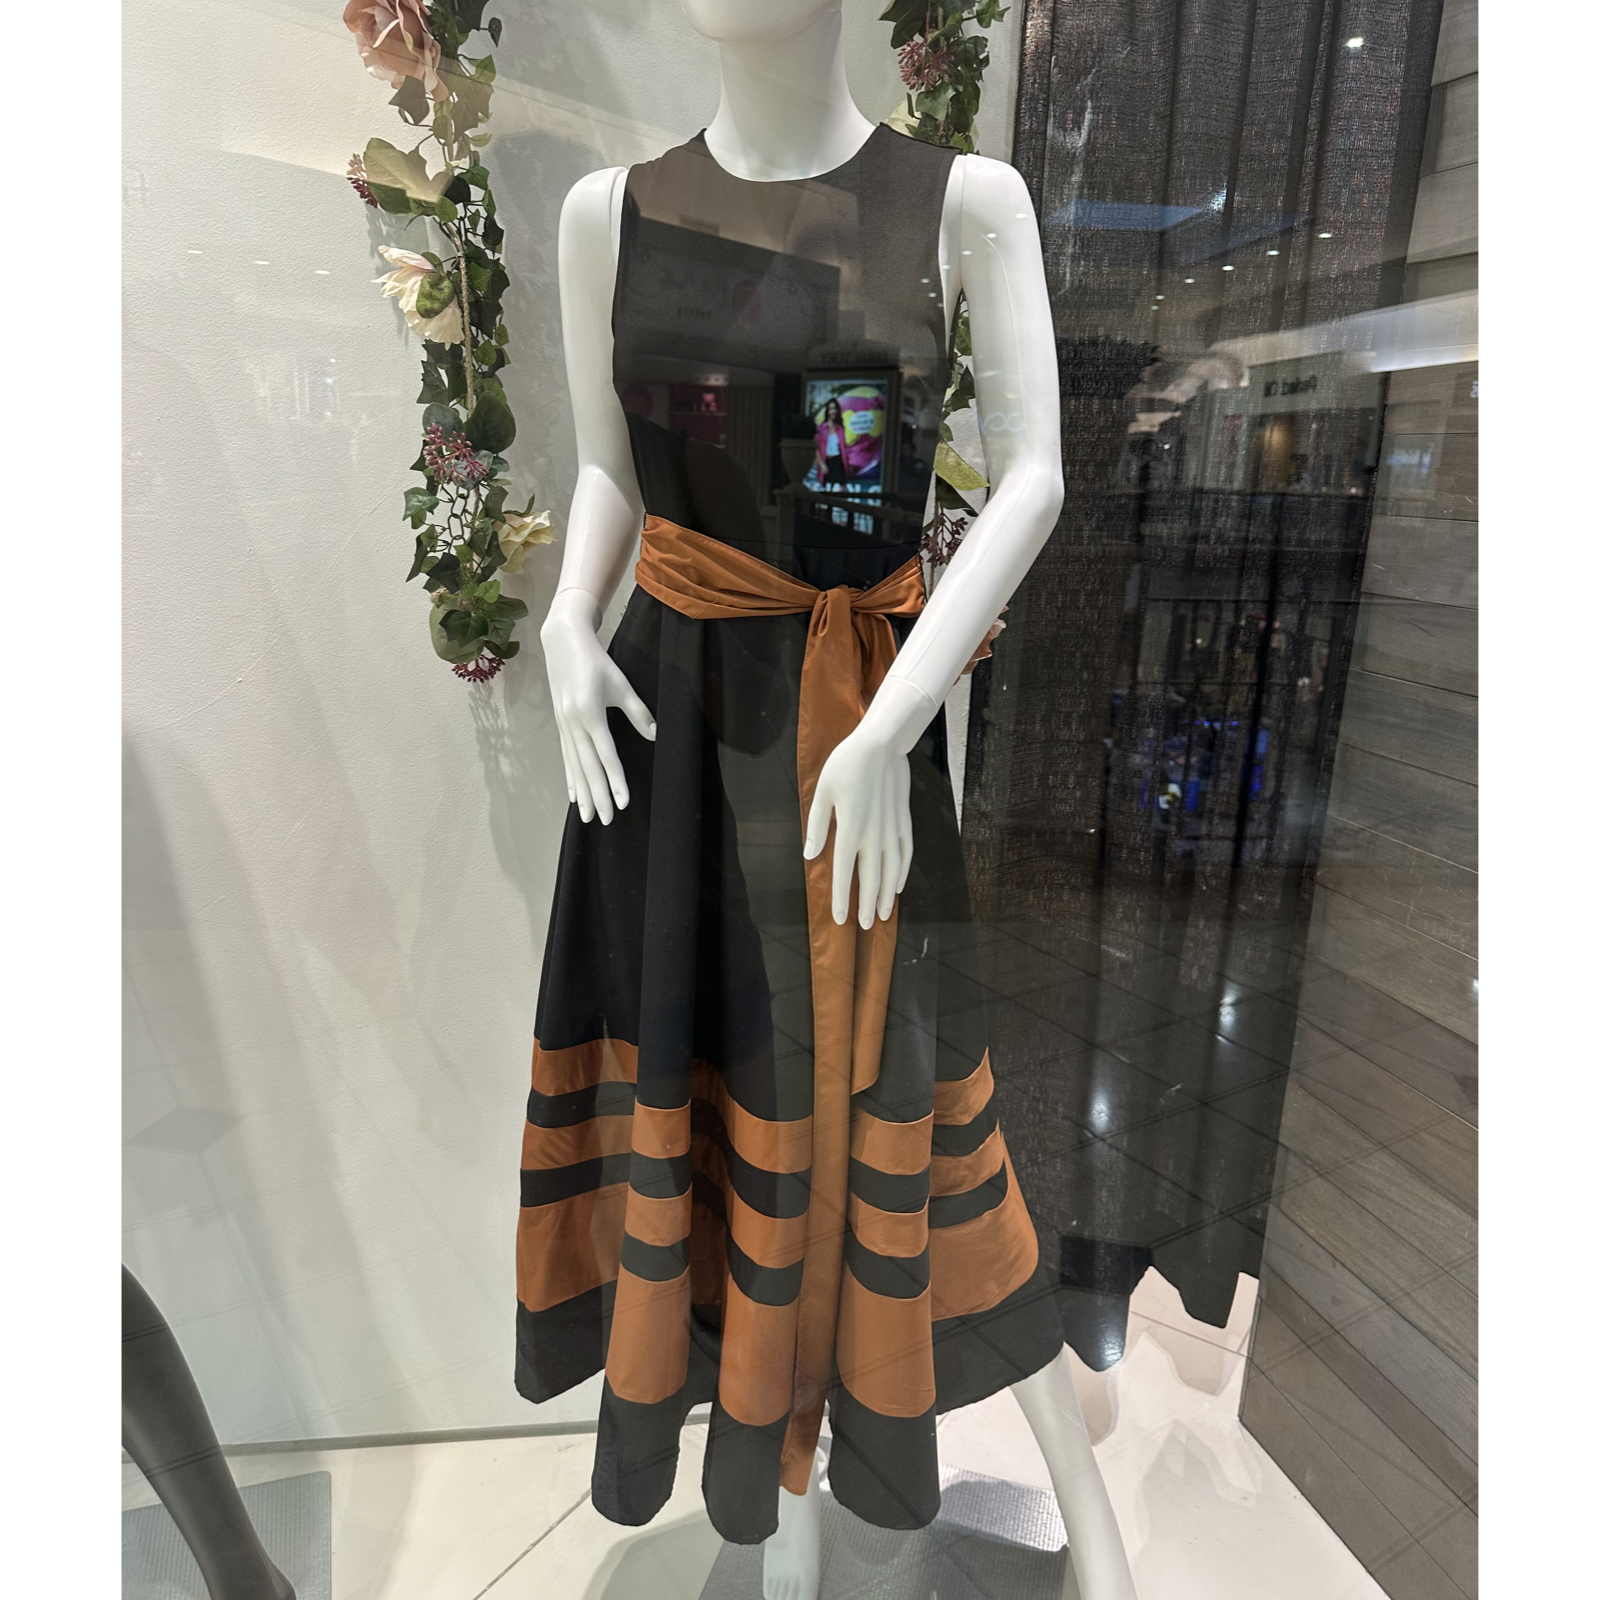 Ana black/orange dress